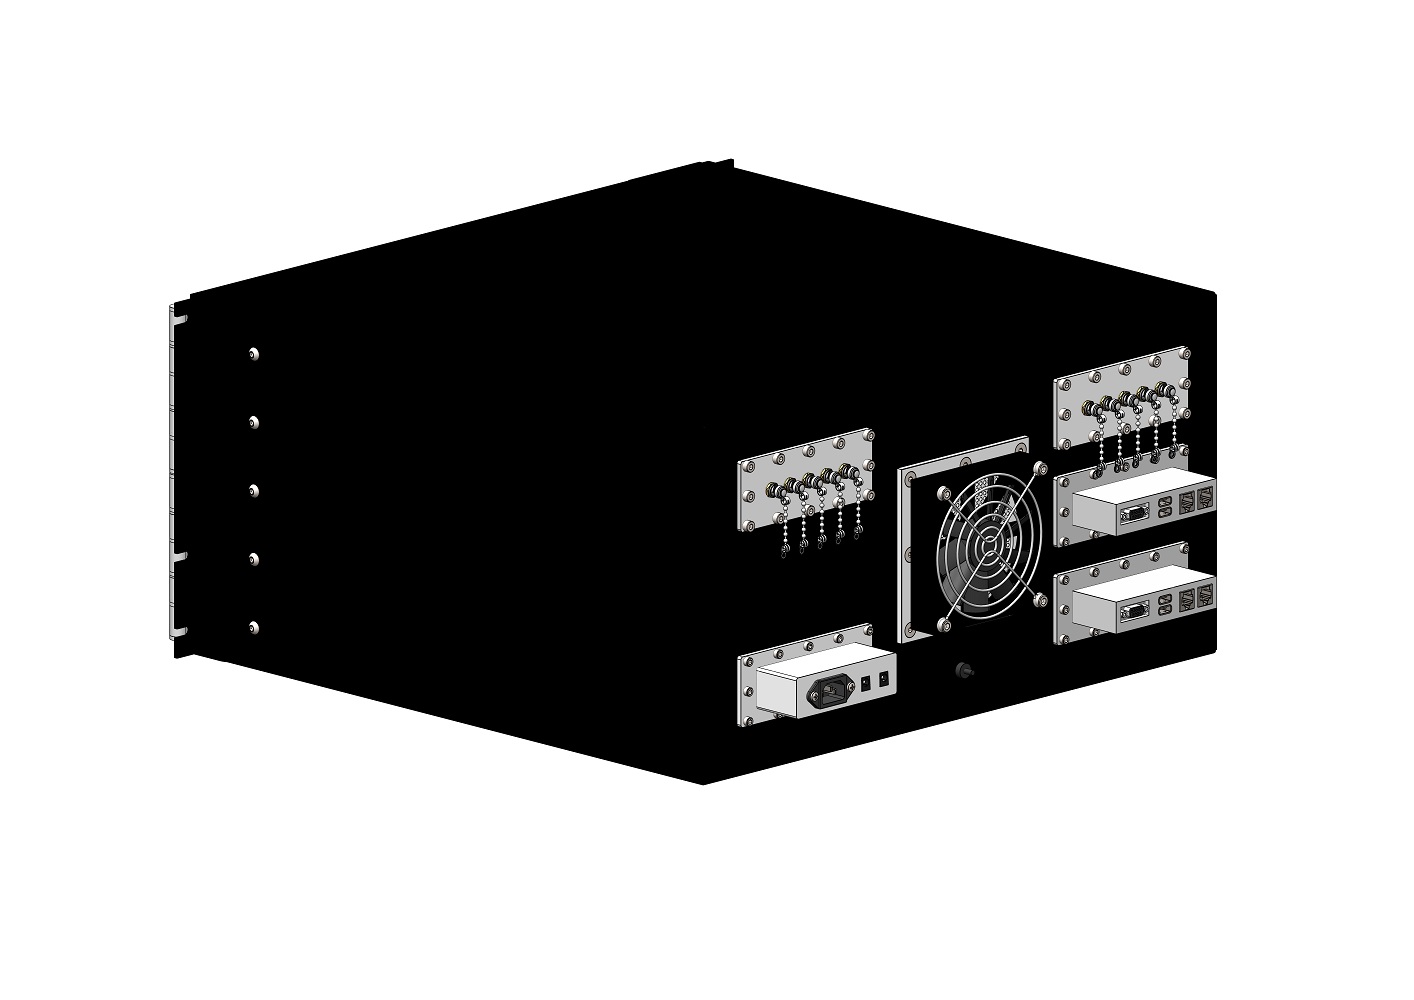 HDRF-1124-F RF Shield Test Box